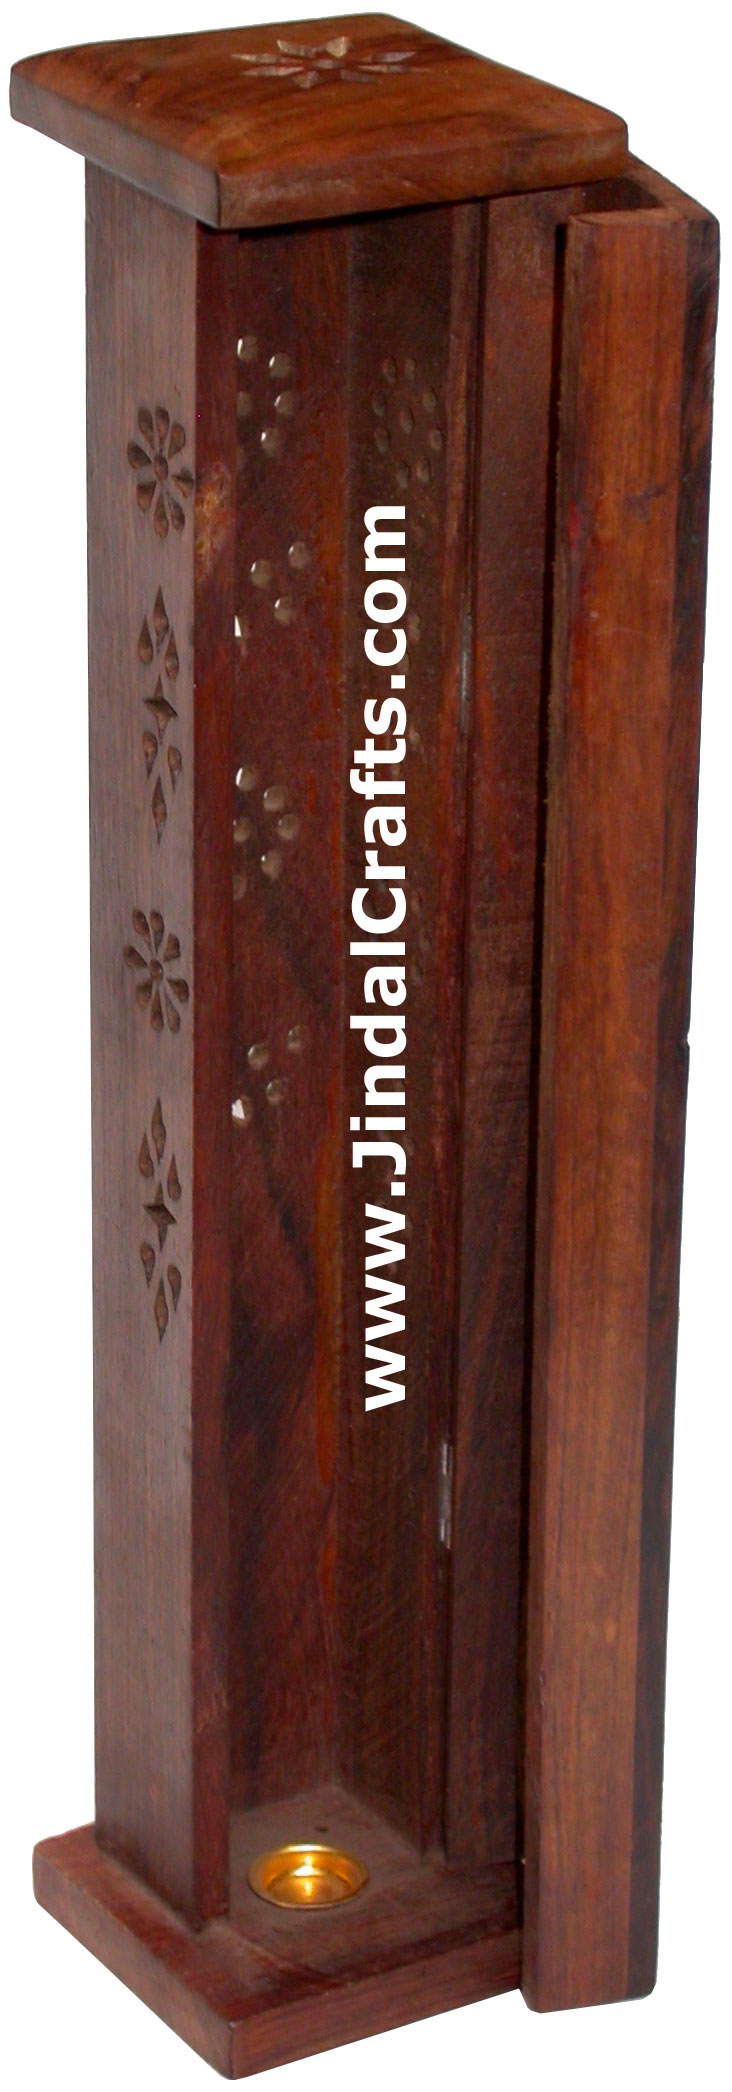 Incense Holder - Hand Carved Wooden Indian Art